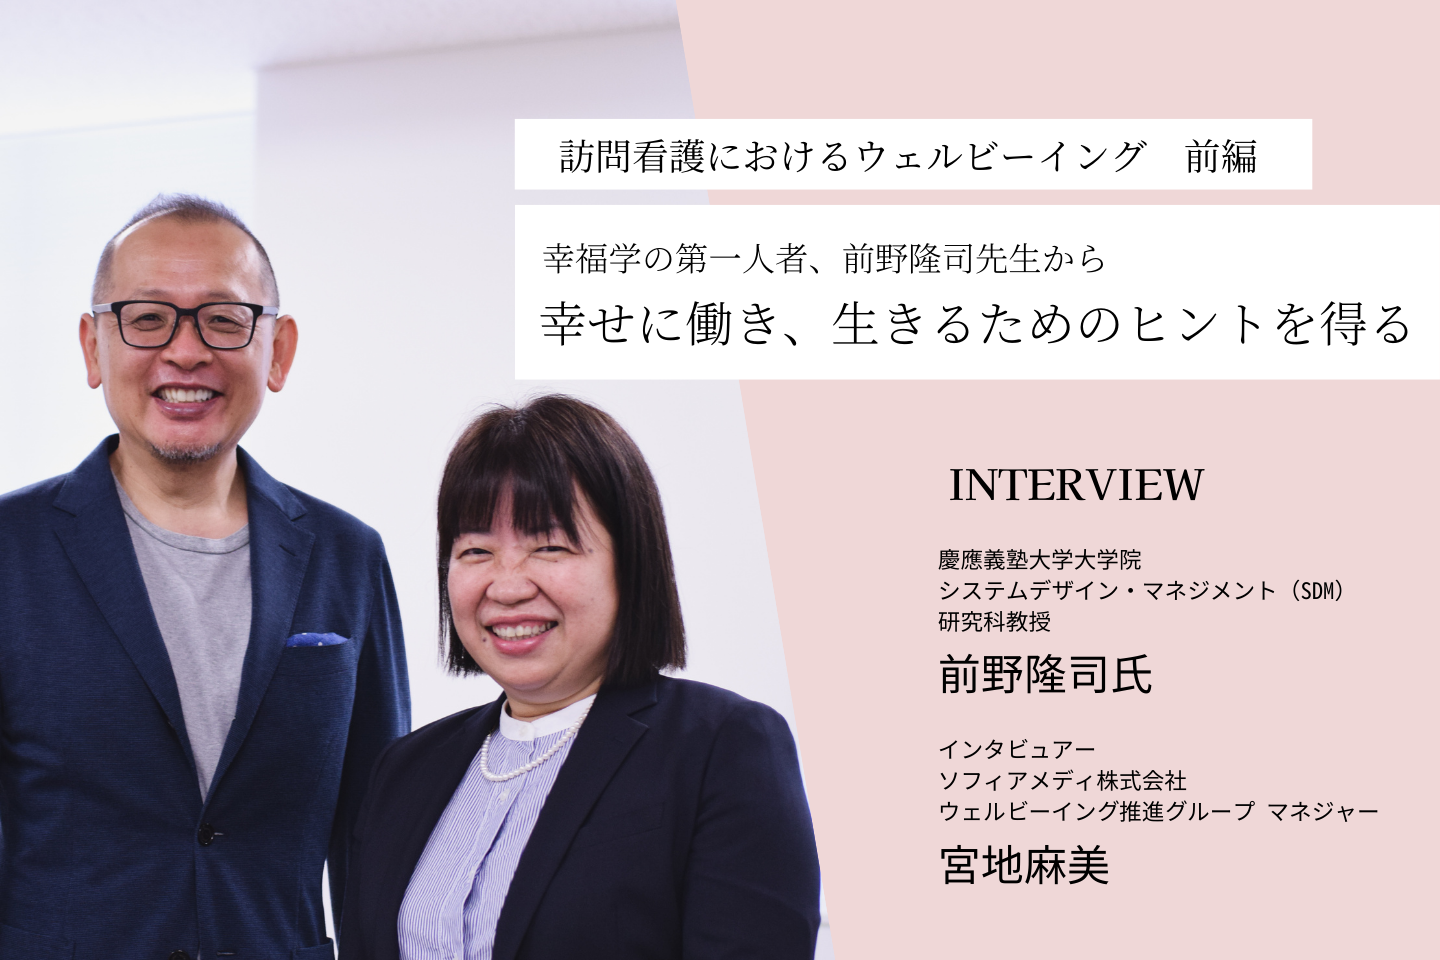 【インタビュー前編】訪問看護におけるウェルビーイング。幸福学の第一人者、前野隆司先生から幸せに働き、生きるためのヒントを得る